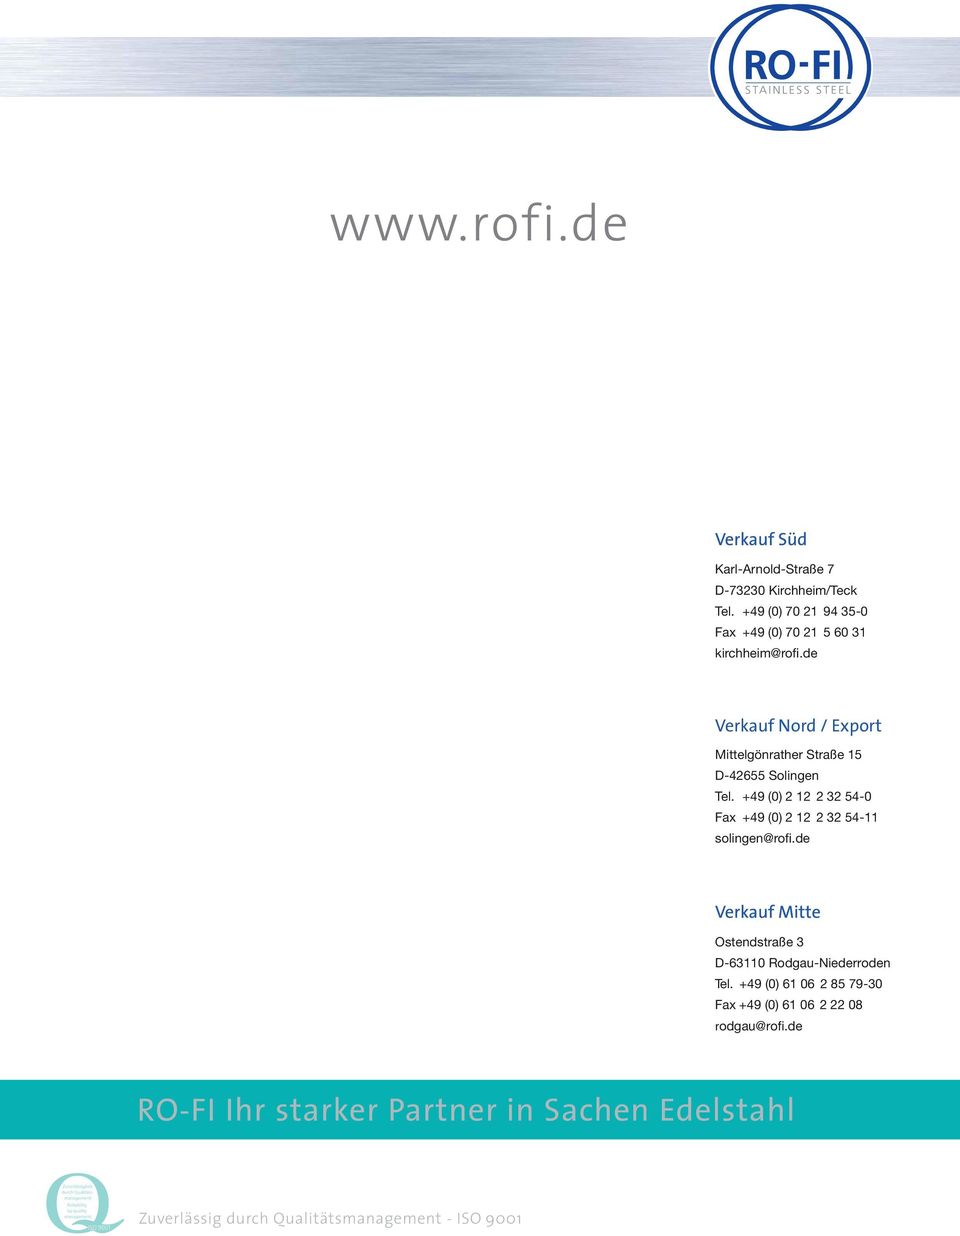 de Ostendstraße 3 D-63110 Rodgau-Niederroden Tel. +49 (0) 61 06 2 85 79-30 Fax +49 (0) 61 06 2 22 08 rodgau@rofi.